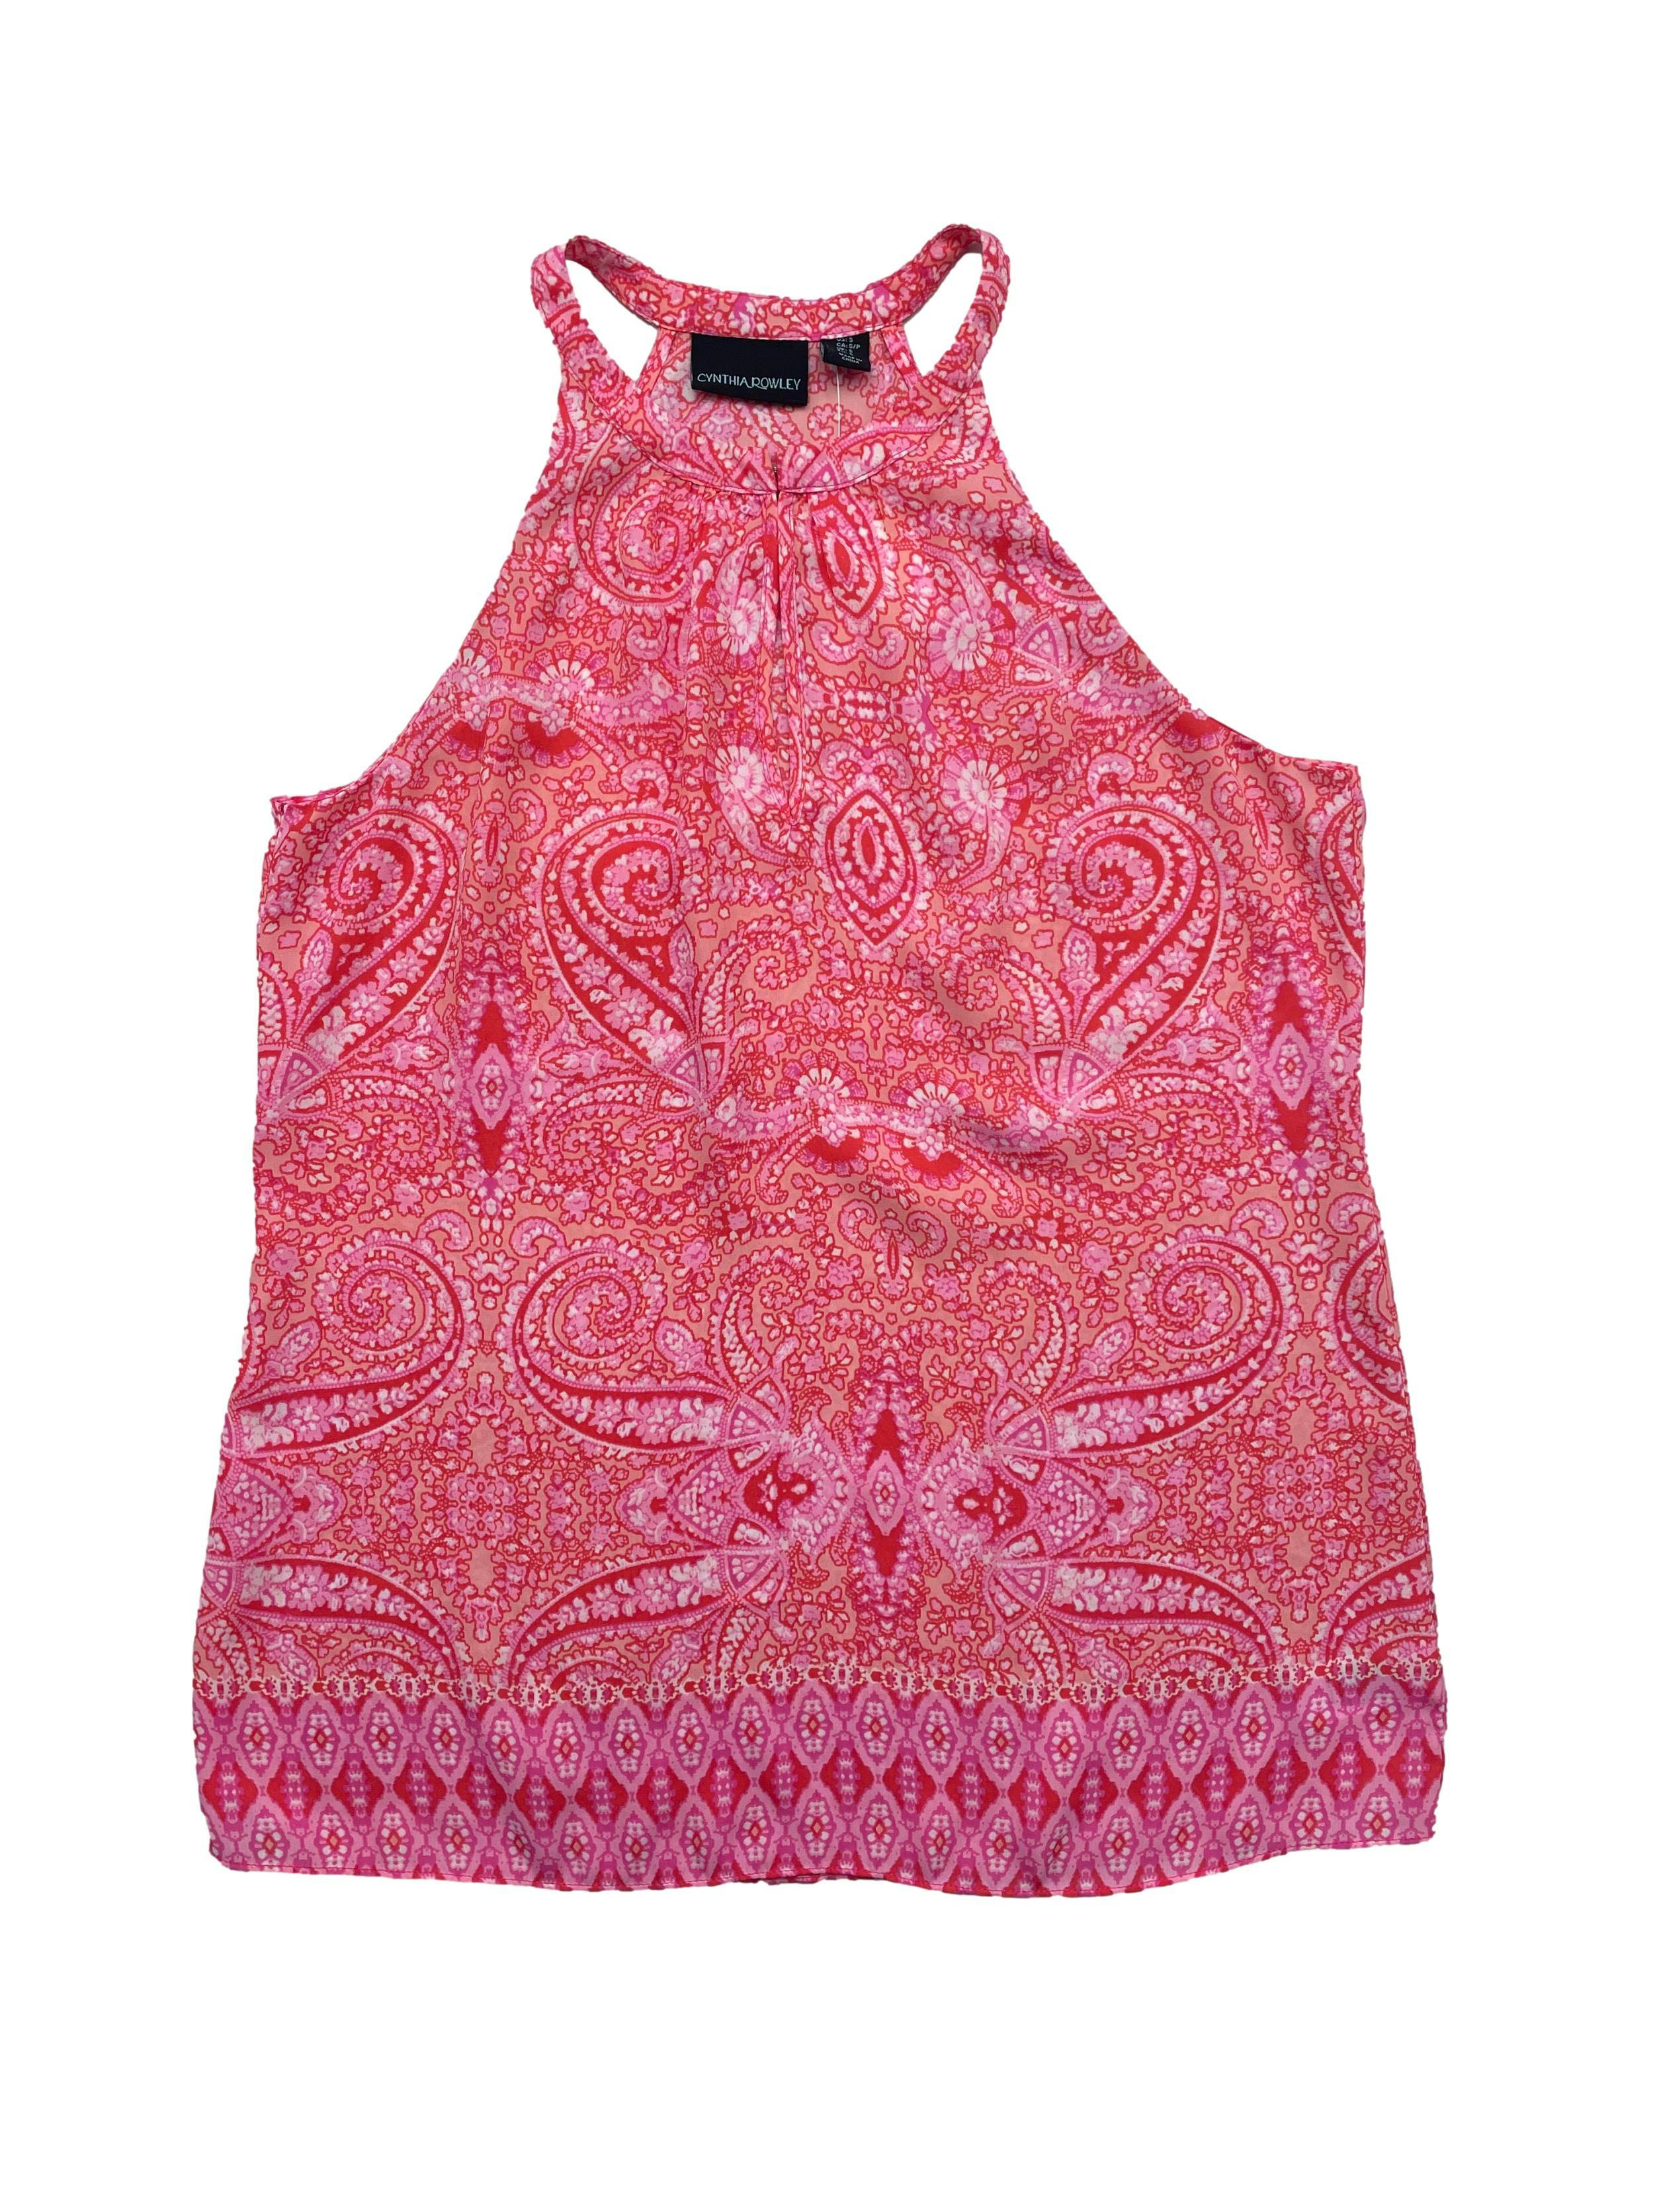 Blusa Cynthia Rowley color rosado con estampado tribla en colores rojos y anarajandos, manga cero pequeño broche en la parte delantera. Busto: 96cm, Largo: 67cm